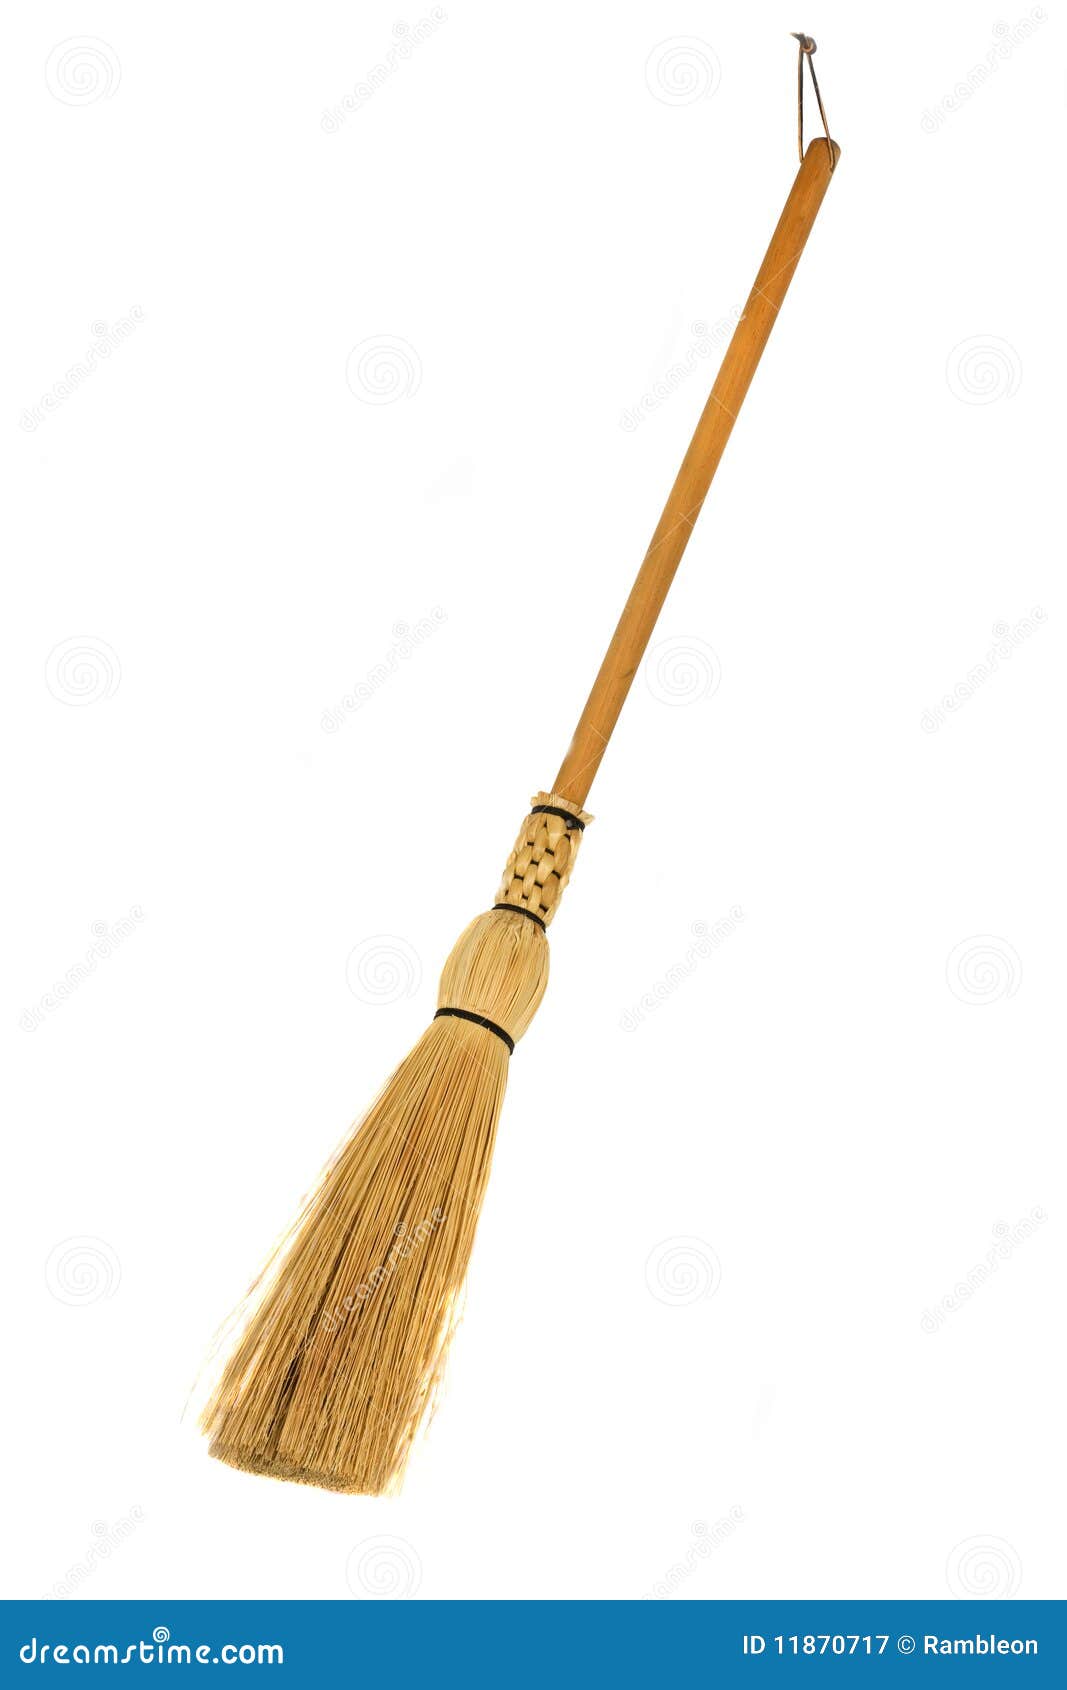 old broom